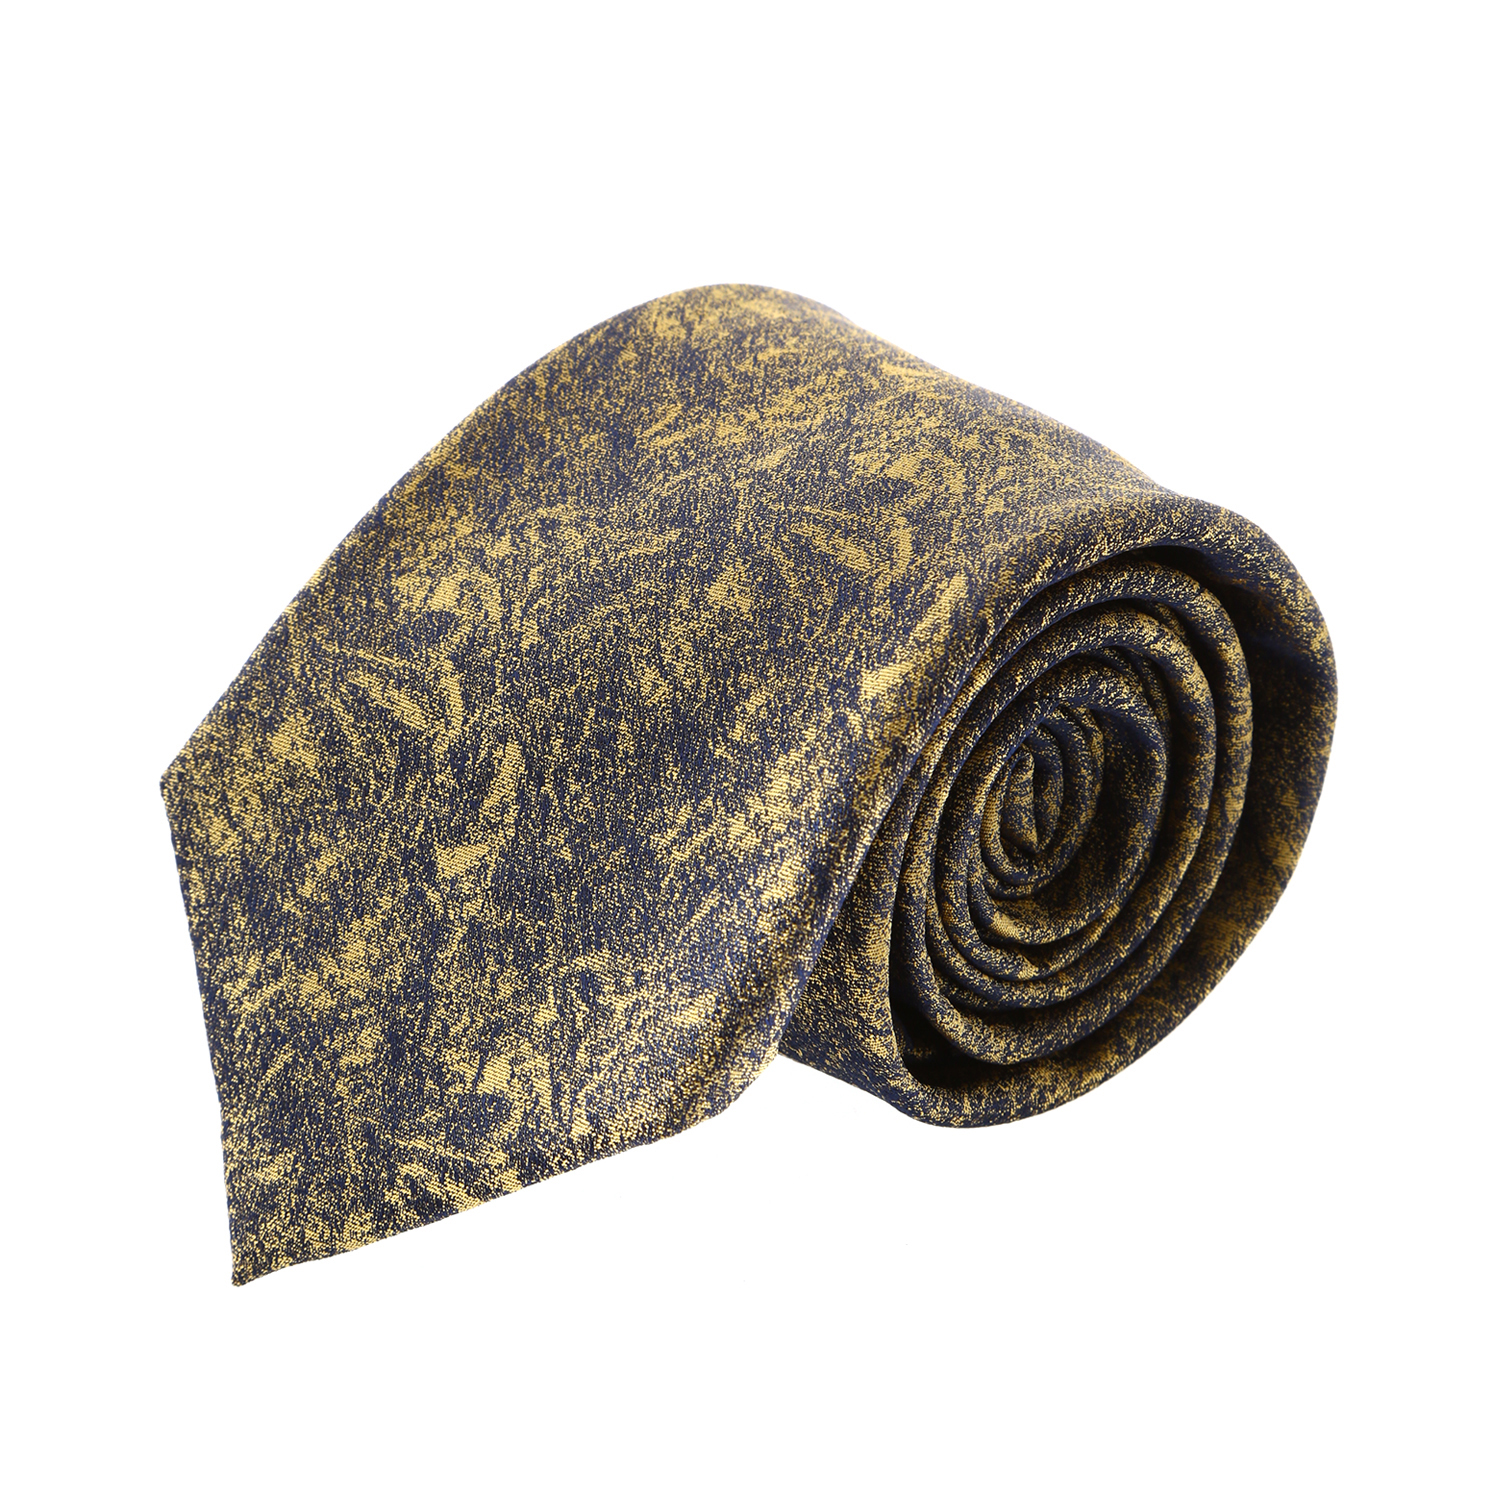 עניבה קלאסית מארבל שחור צהוב